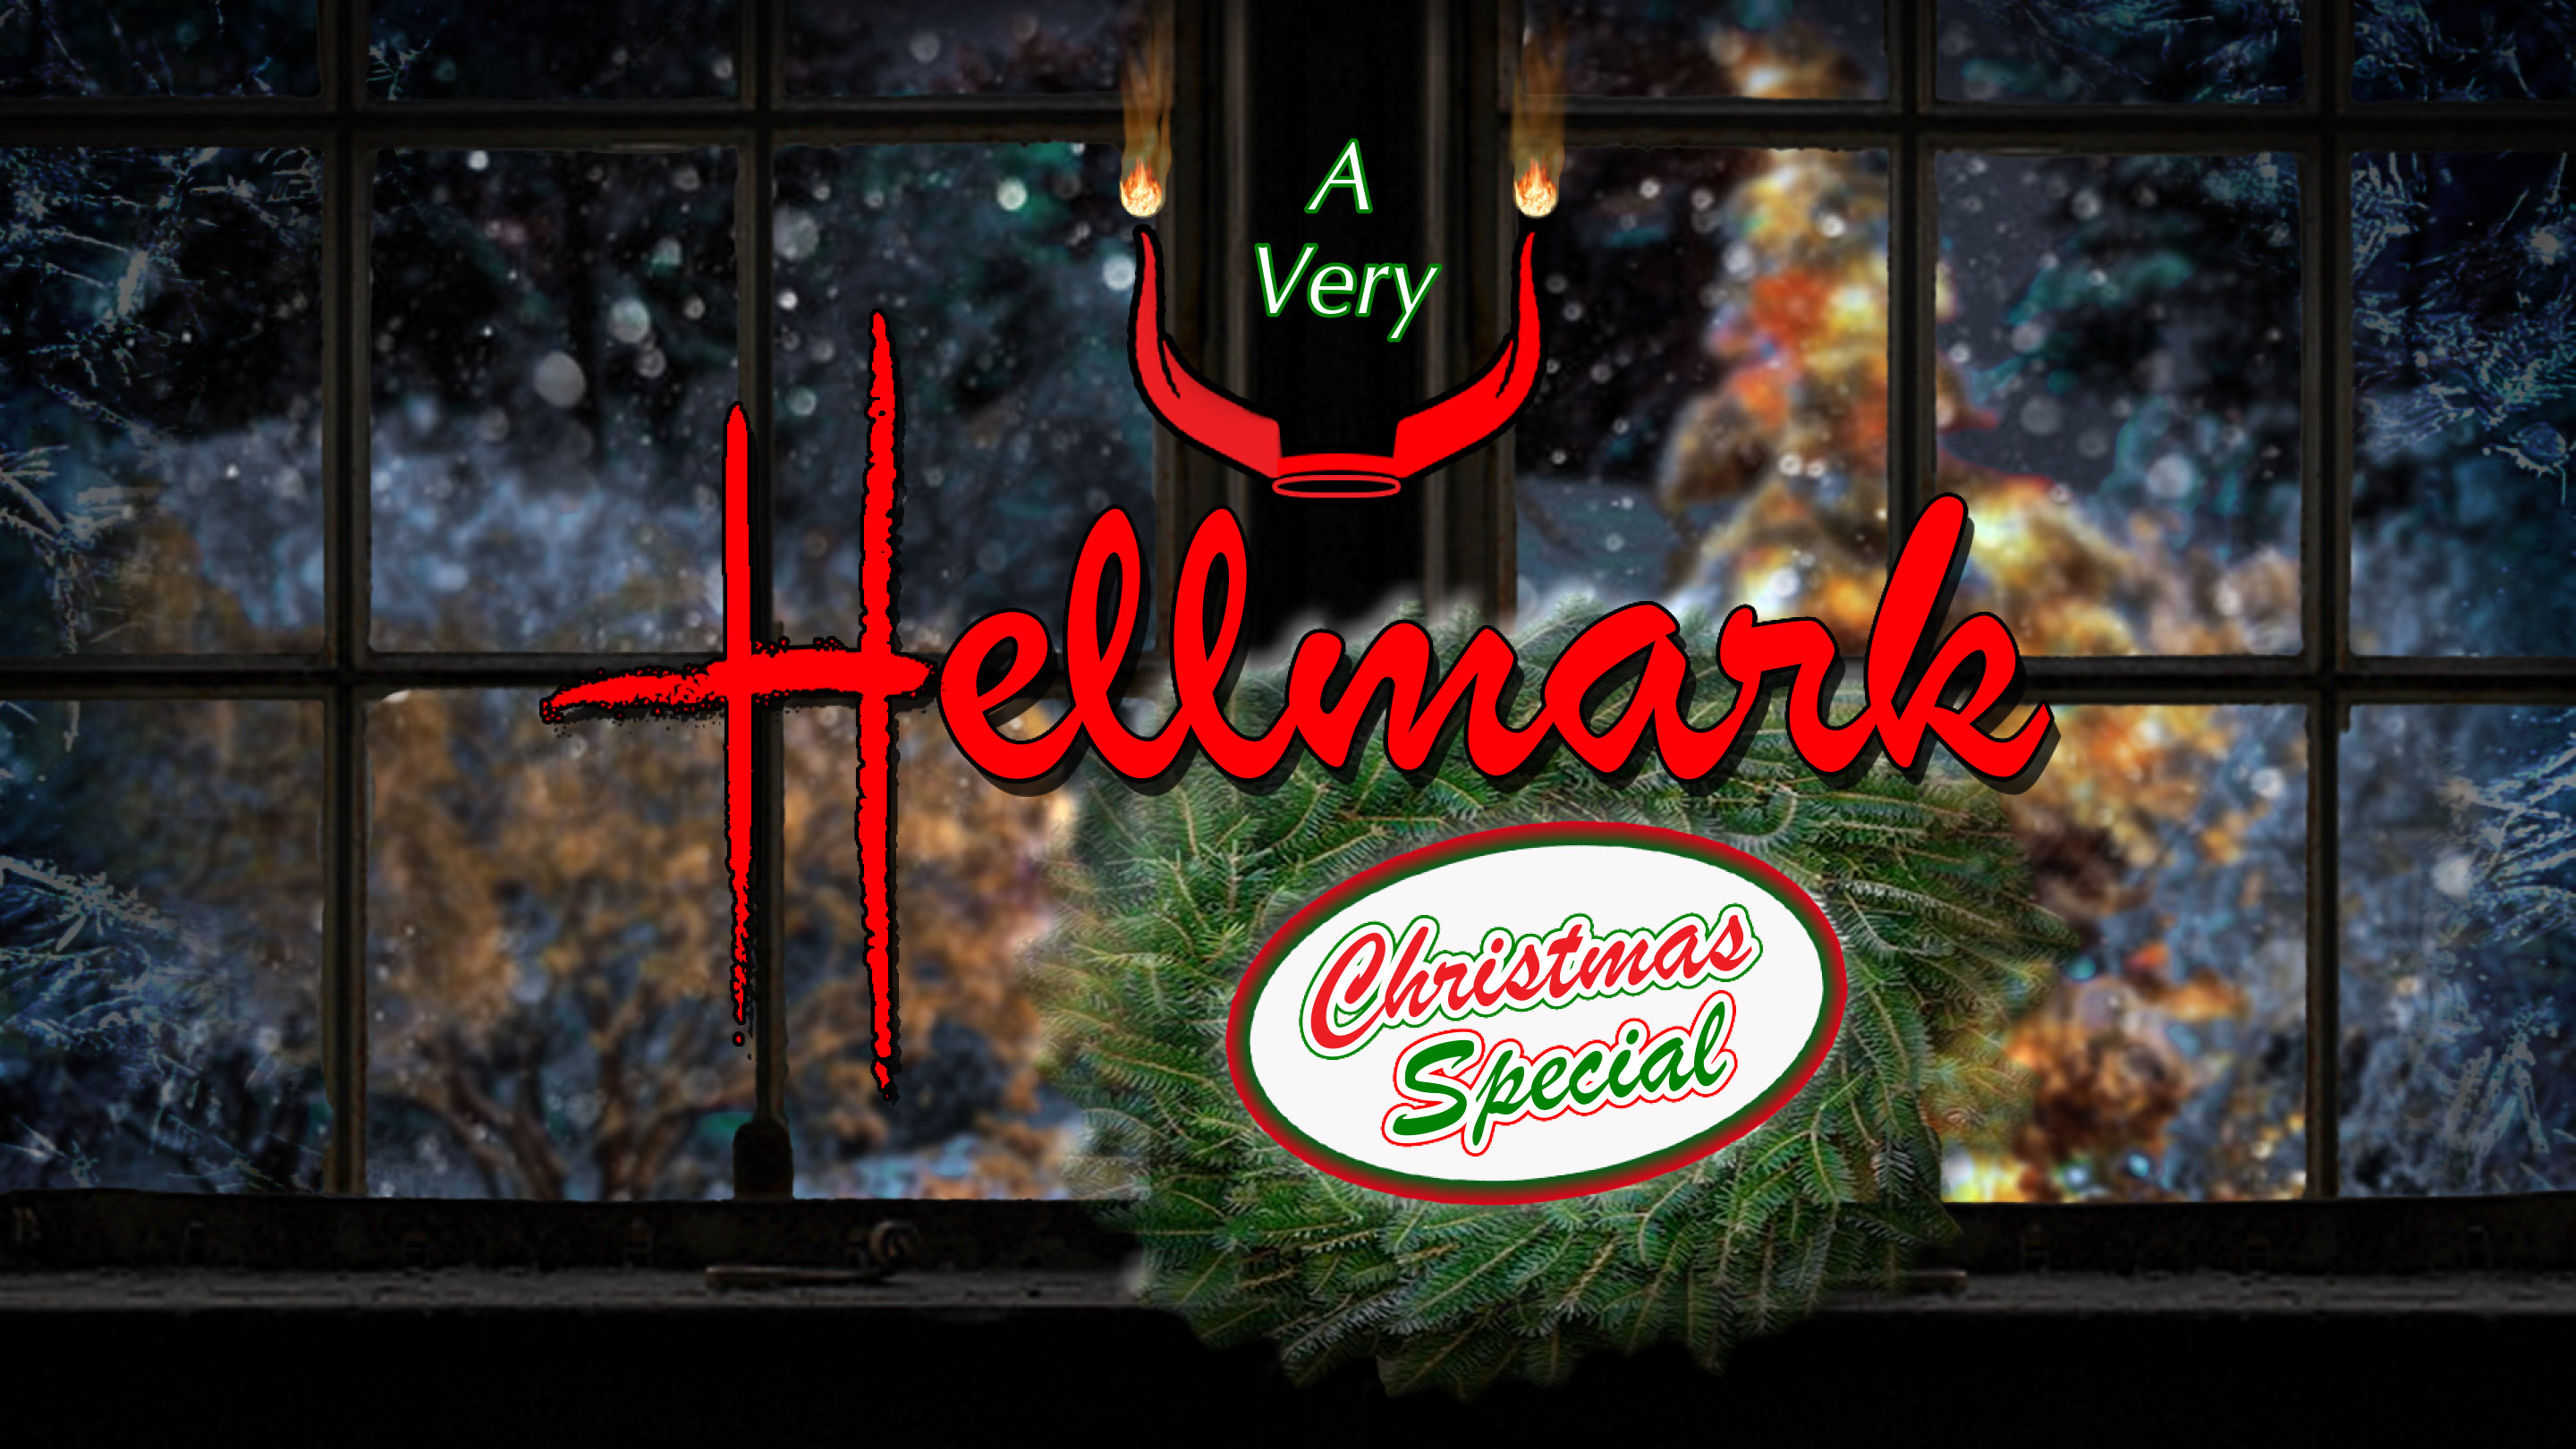 A Very Hellmark Christmas Specia;